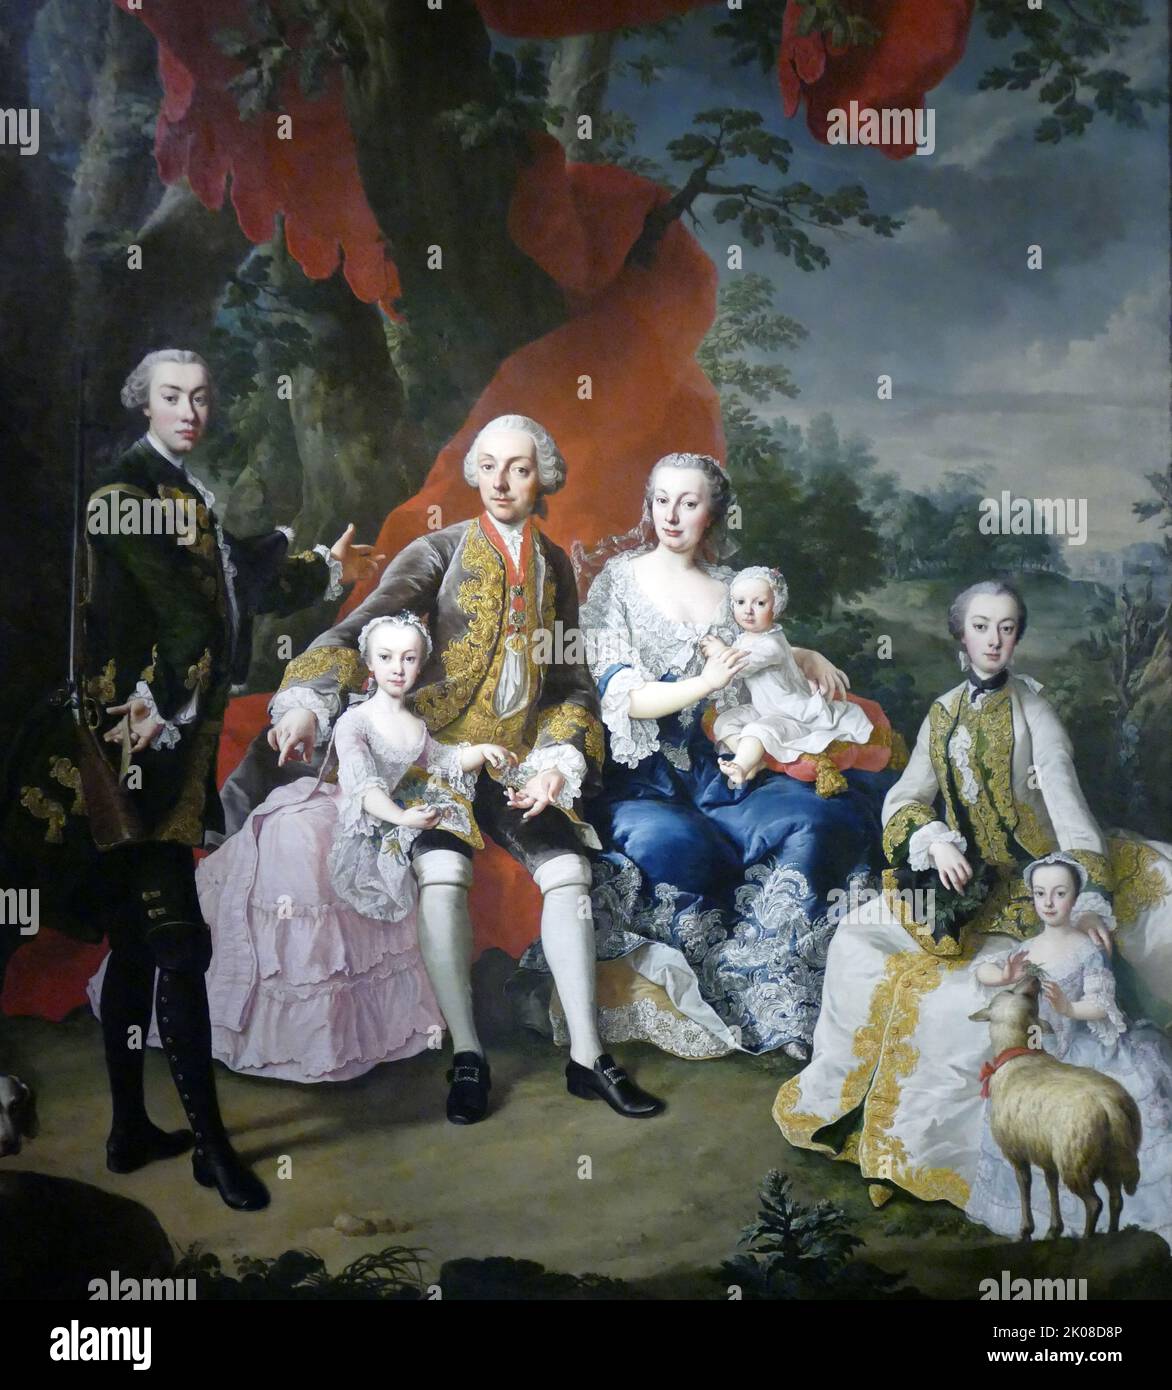 La famille du Comte Nikolaus Palffy von Erdod, c1760 ans, de Martin van Meytens (24 juin 1695 - 23 mars 1770) était un peintre suédois-autrichien qui peint des membres de la Cour royale d'Autriche tels que Marie-Antoinette, Marie-Thérèse d'Autriche, François Ier, Saint empereur romain, La famille de l'empereur et les membres de l'aristocratie locale. Nikolaus VI Graf Palffy von Erdod (1 mars 1657 - 20 février 1732) était un noble hongrois, un maréchal impérial de campagne et un palatin de Hongrie Banque D'Images